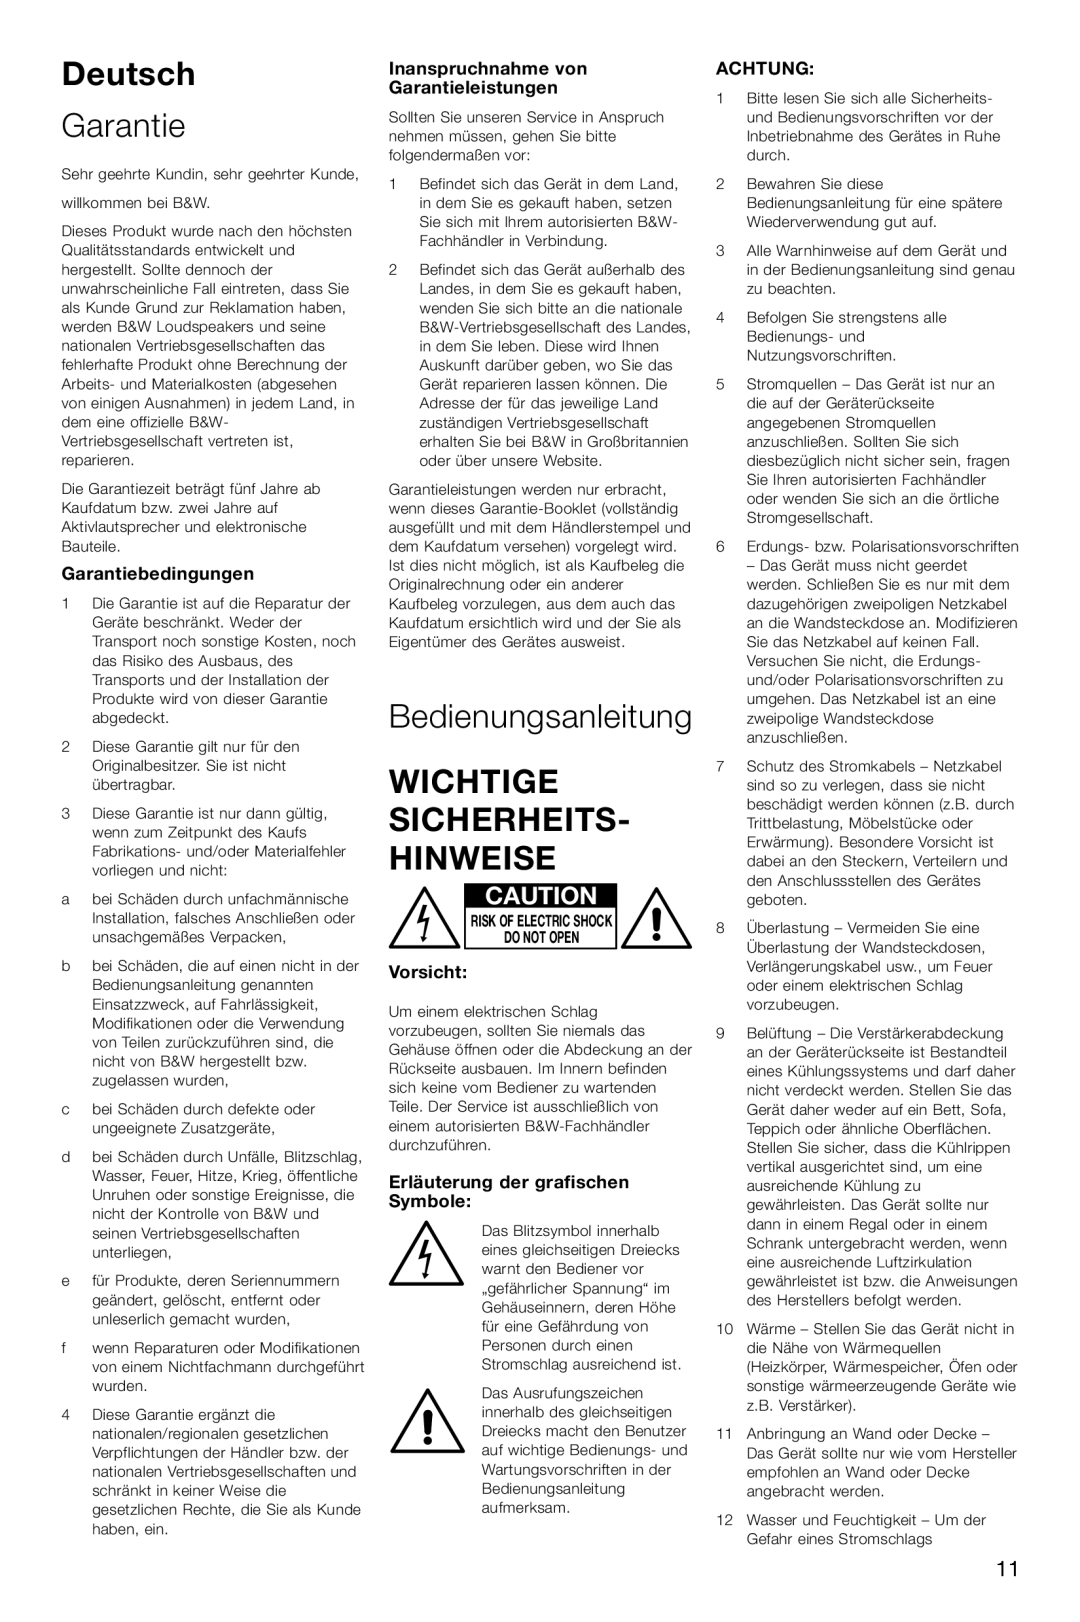 Bowers & Wilkins ASW600 Deutsch, Bedienungsanleitung, Wichtige Sicherheits- Hinweise, Garantiebedingungen, Vorsicht 